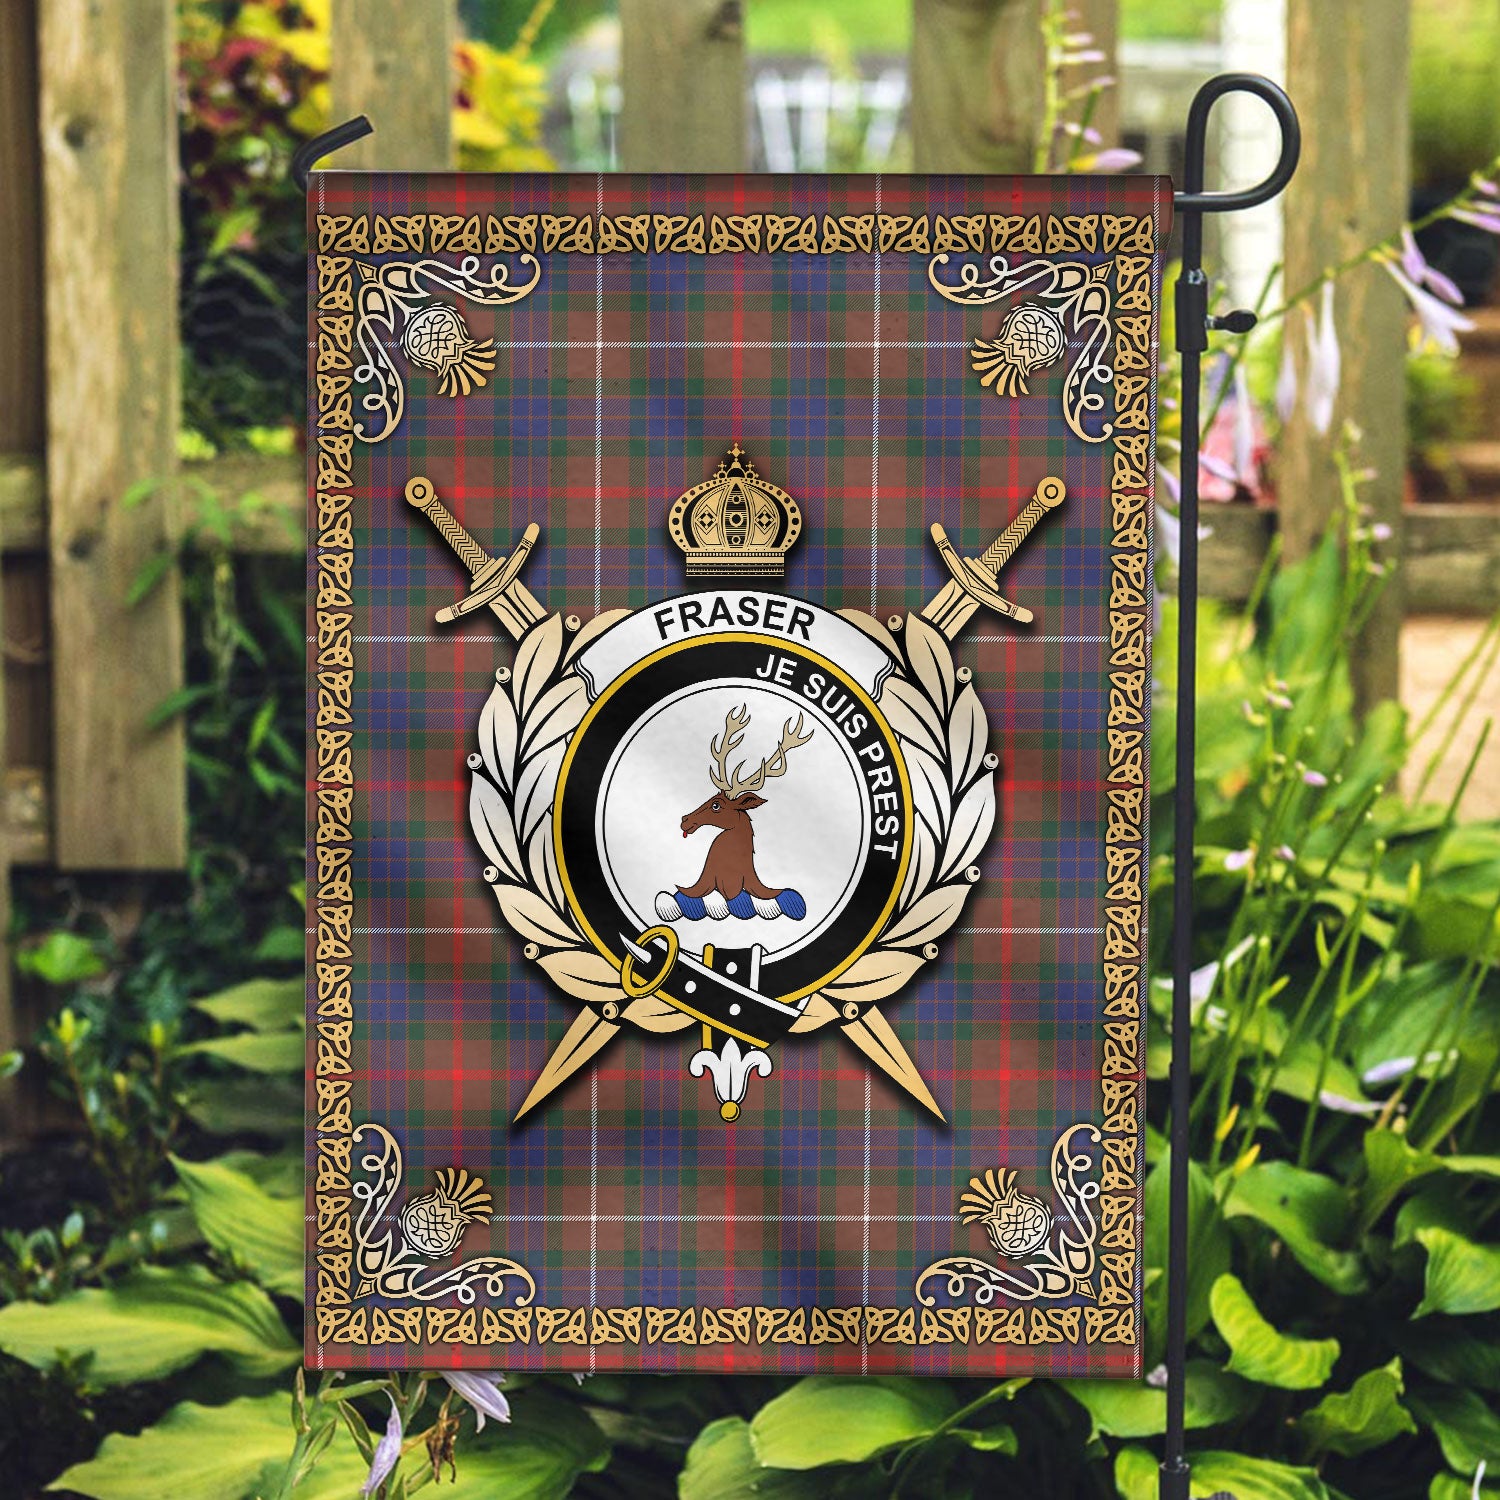 Fraser (of Lovat) Hunting Modern Tartan Crest Garden Flag - Celtic Thistle Style